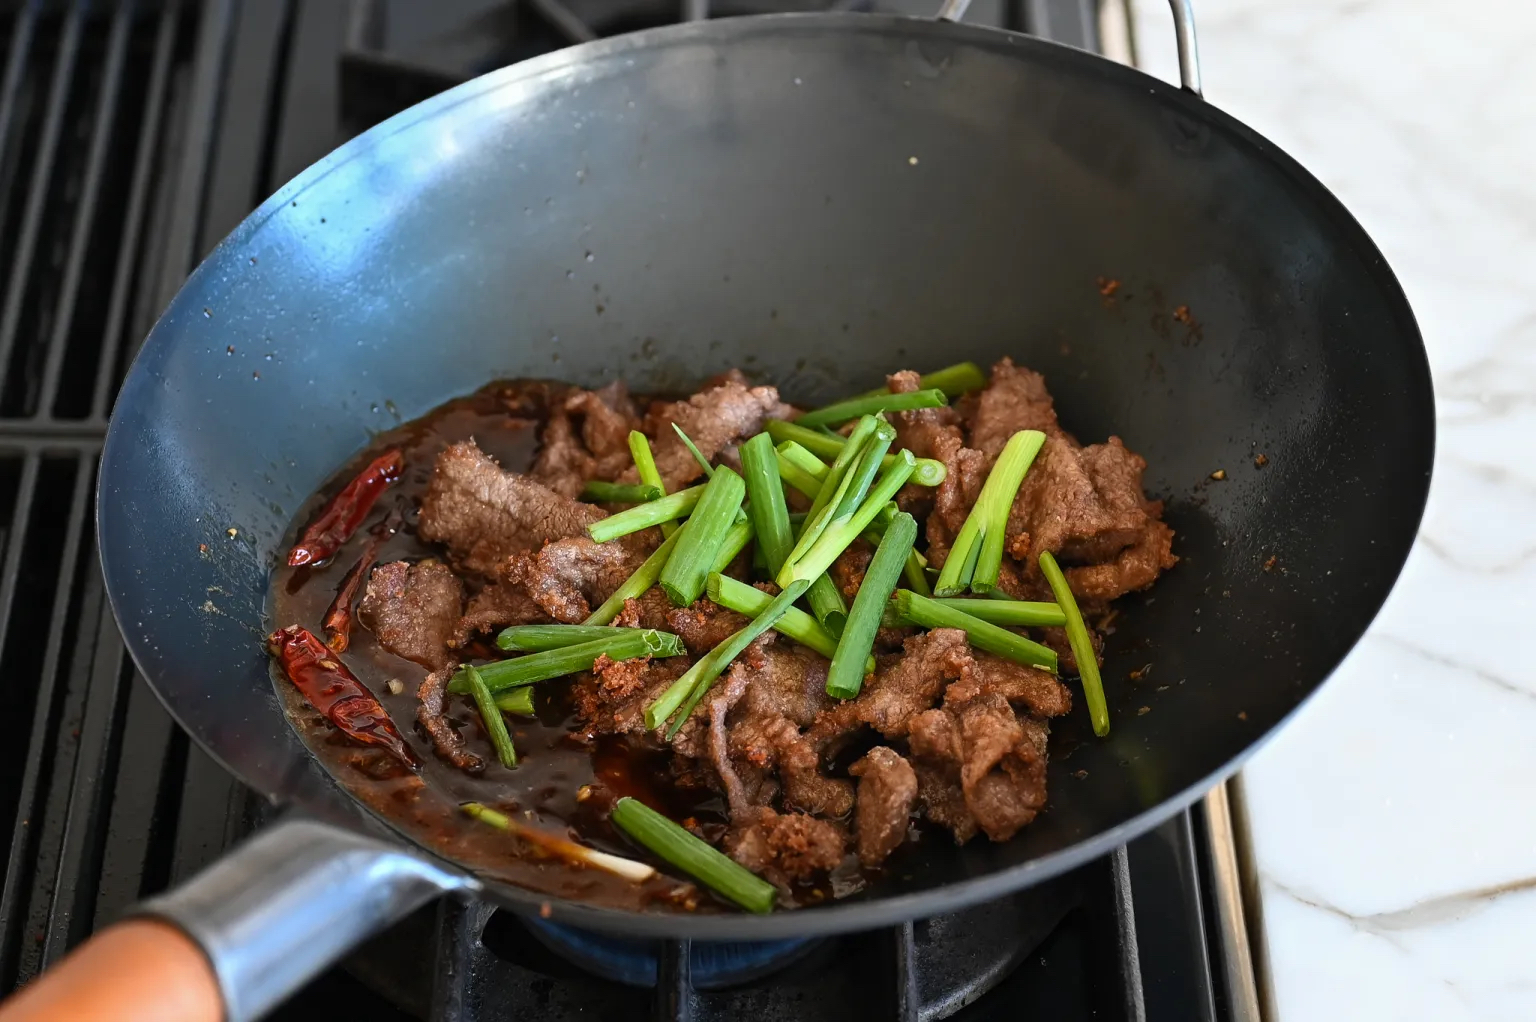 Making Mongolian beef